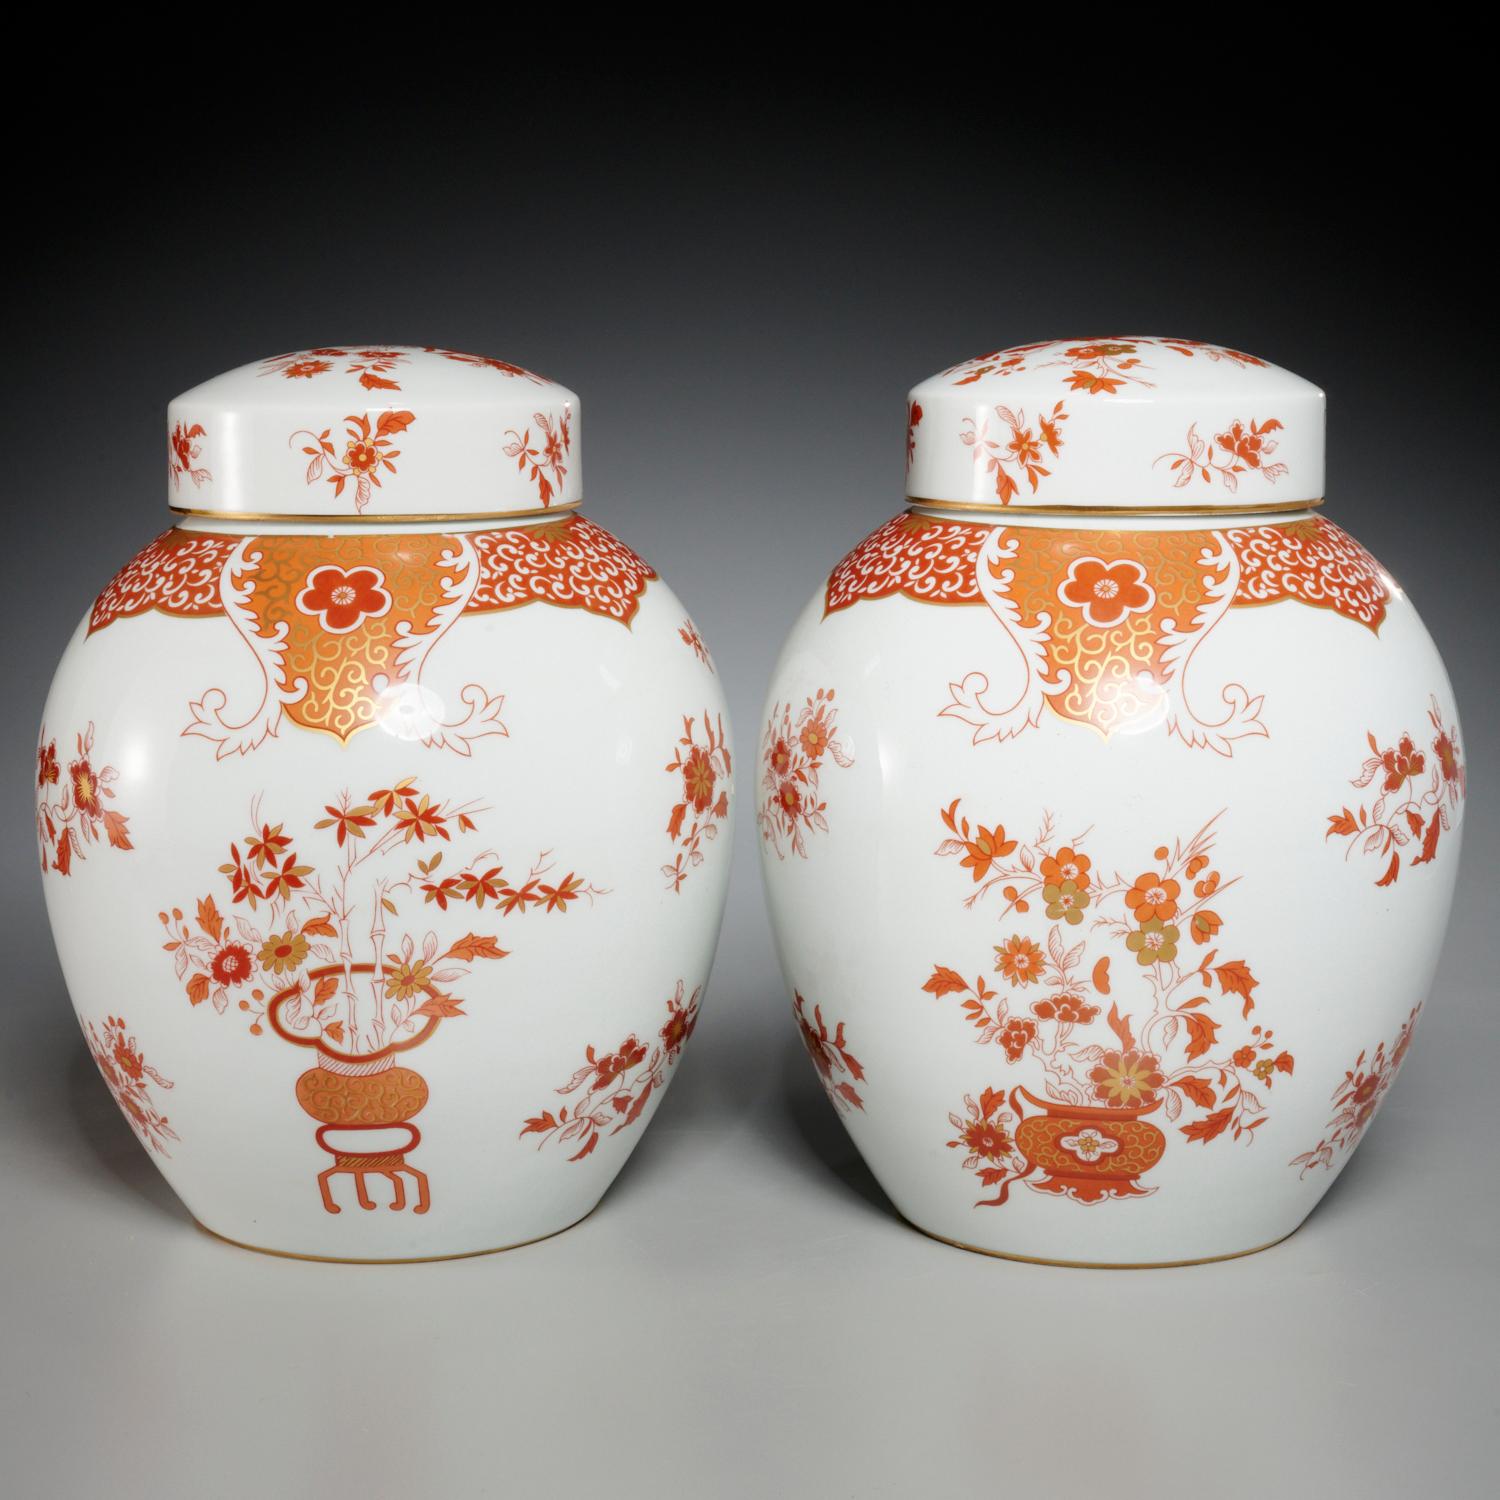 20. Jh., ein Paar japanische Porzellandosen mit Deckel im Kutani-Stil, gestempelt auf Porcelaine de Paris auf der Unterseite des Fußes. Die Marke weist darauf hin, dass das Stück in den 1970er Jahren hergestellt wurde. Die Gläser sind mit Motiven in